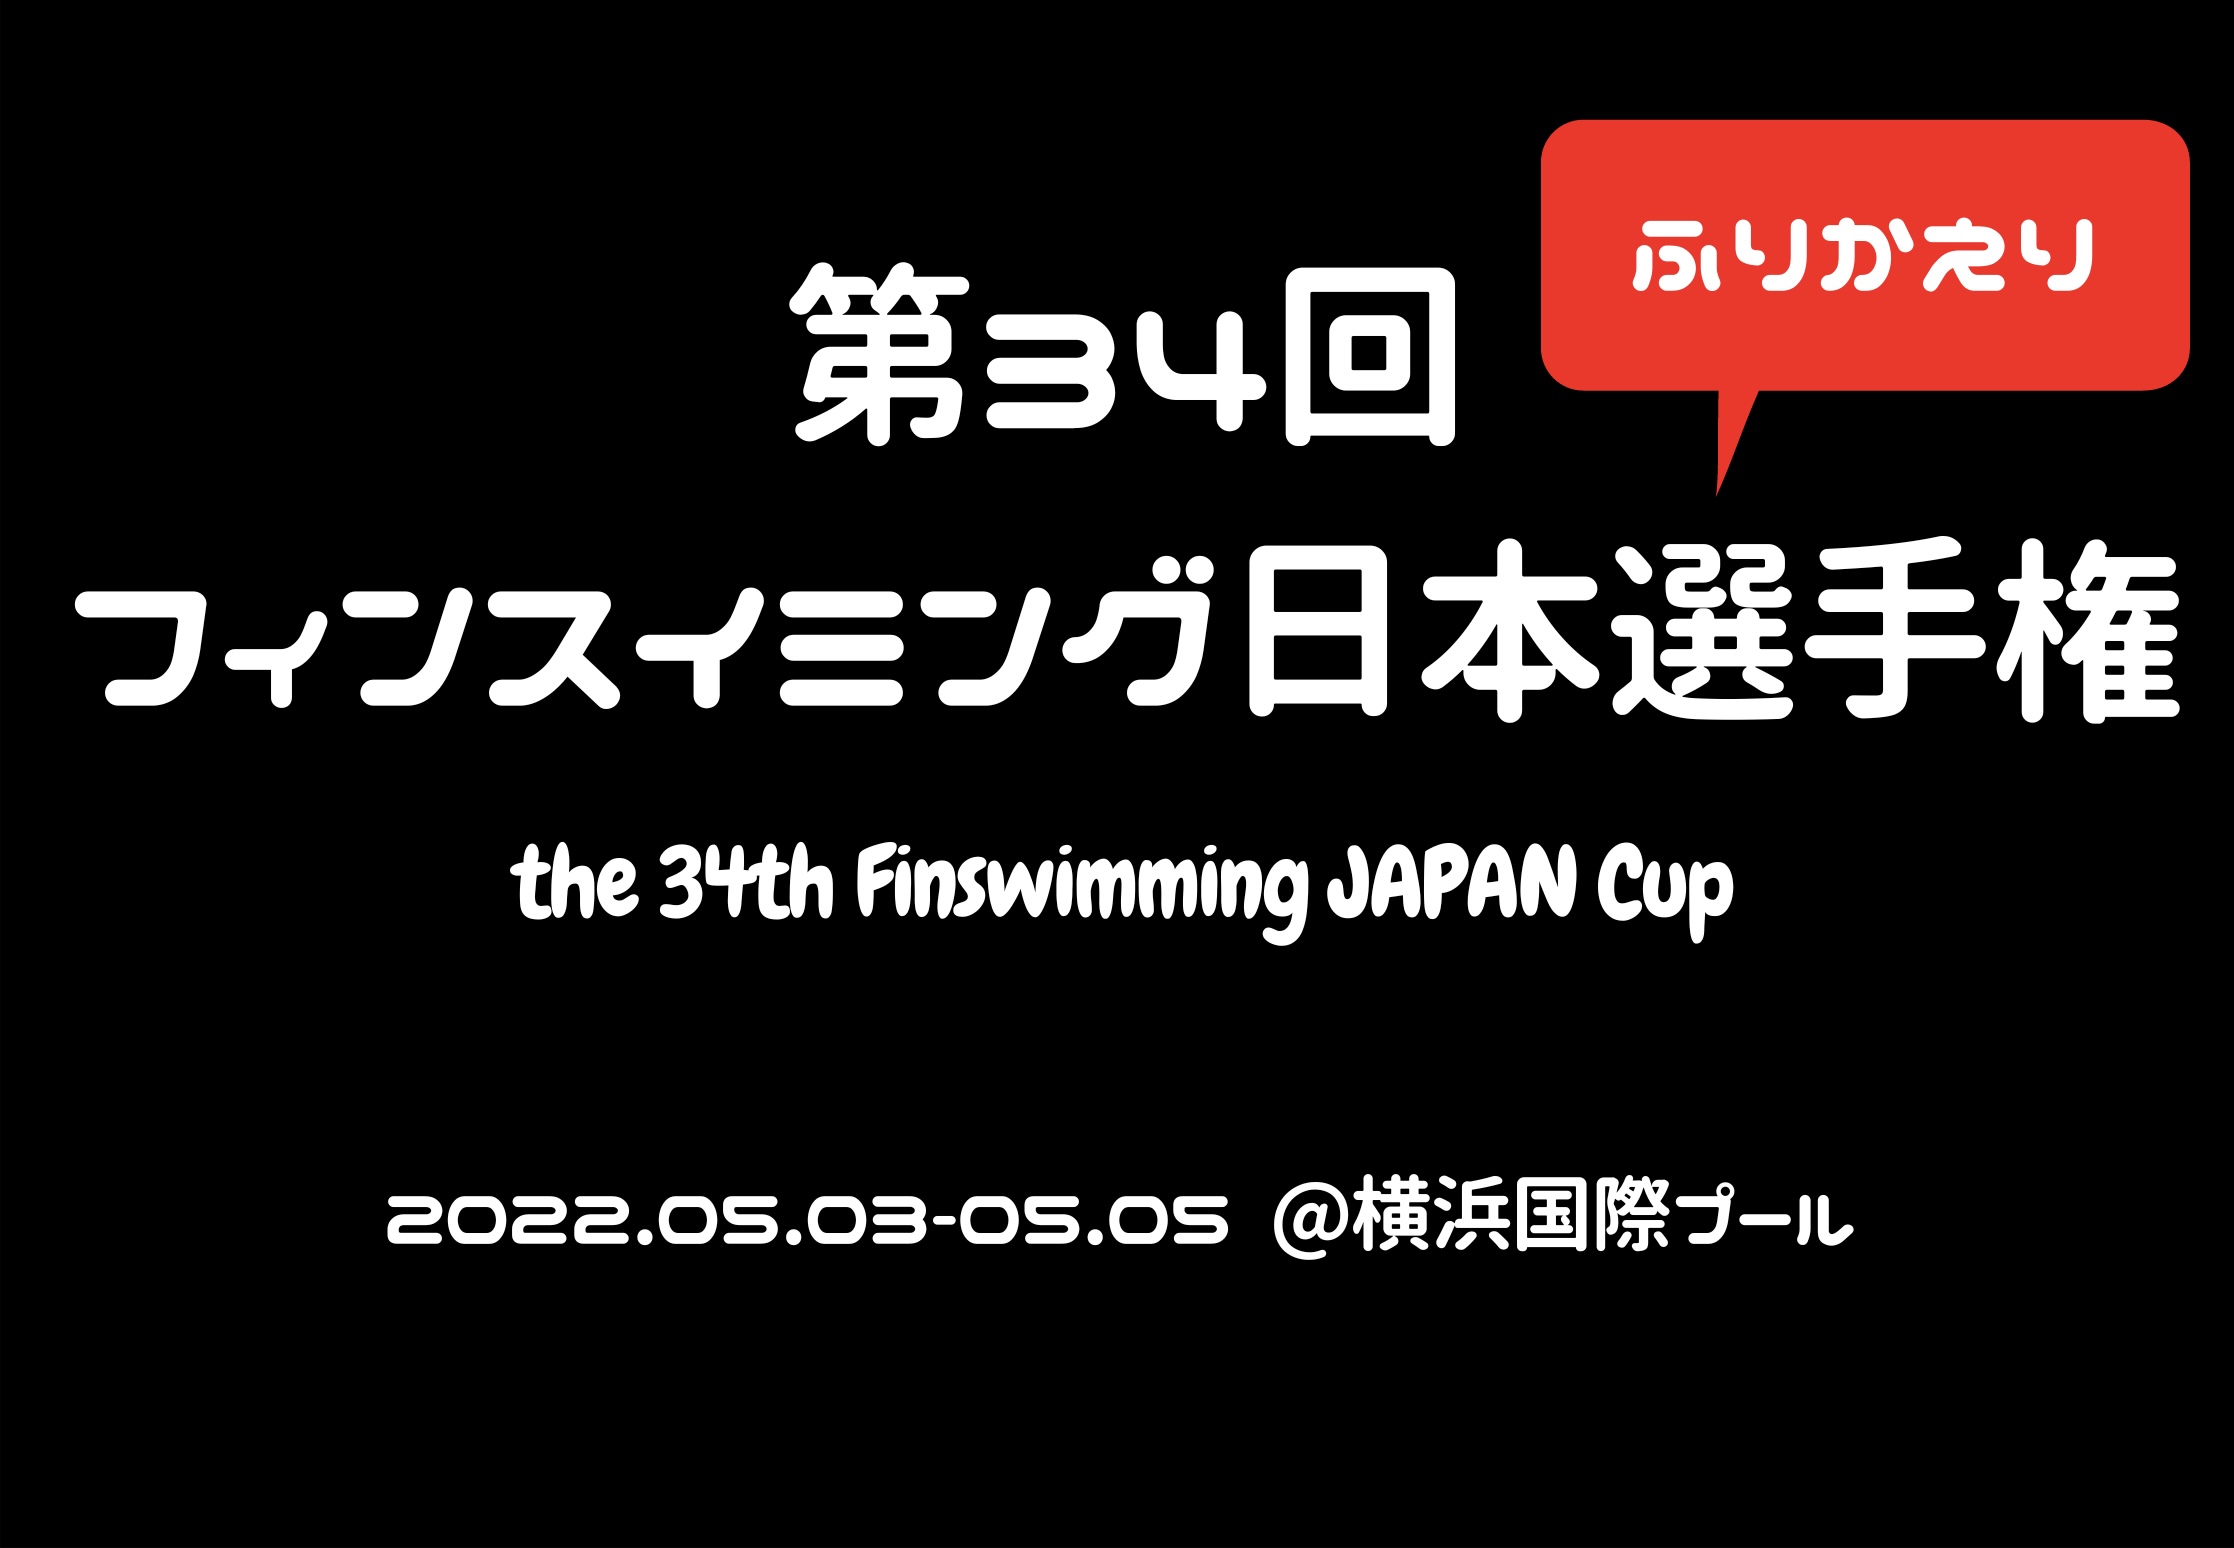 【大会振り返り】第34回フィンスイミング日本選手権大会(2022.05)